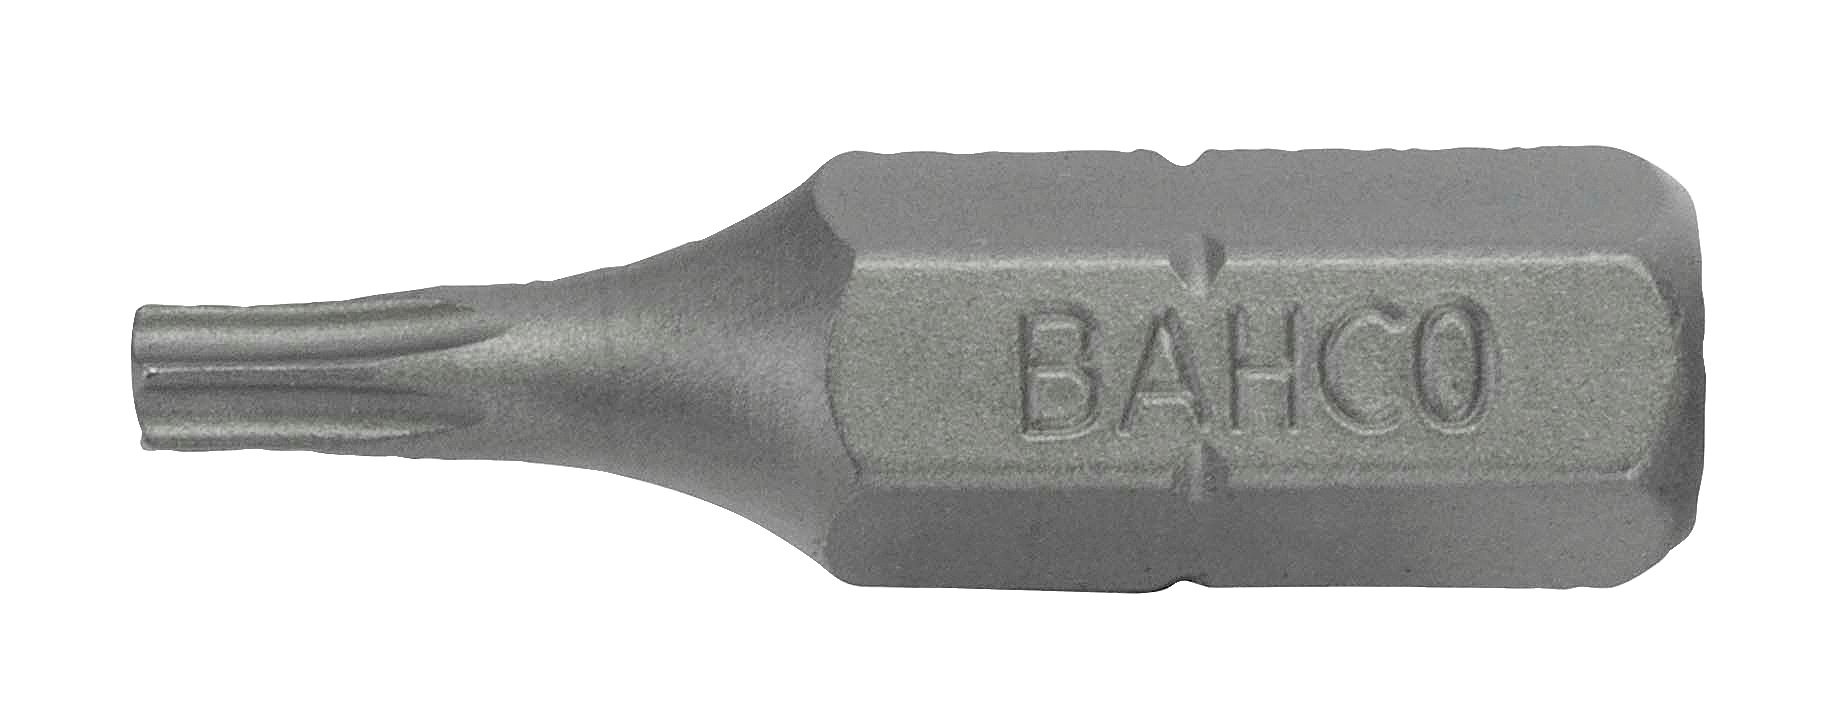 картинка Стандартные биты для отверток Torx®, 25 мм BAHCO 59S/T27-3P от магазина "Элит-инструмент"